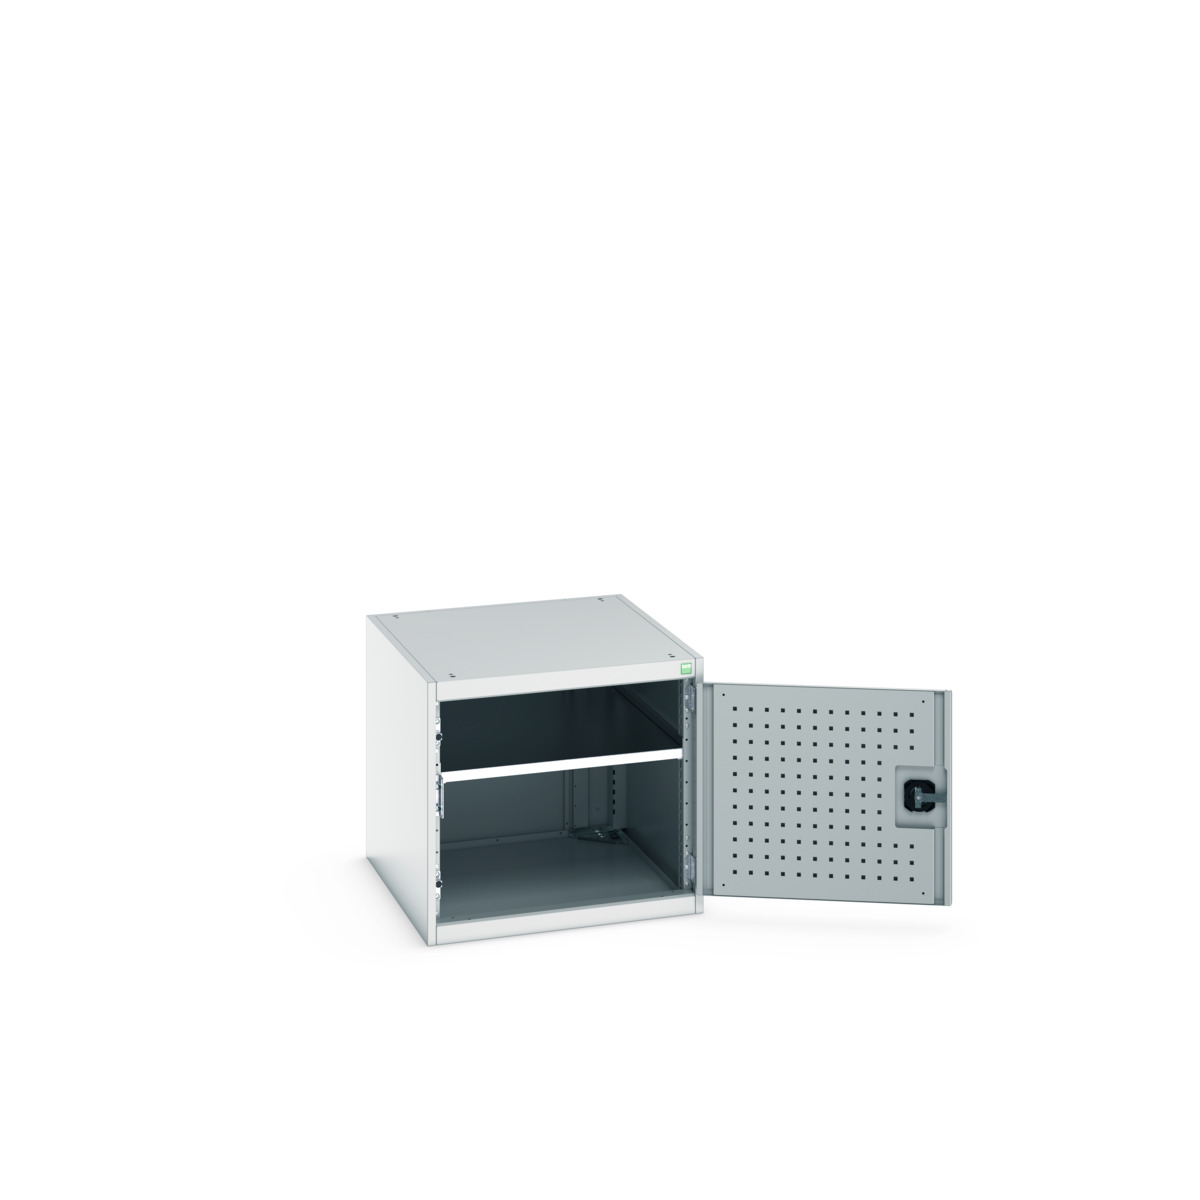 40027098.16V - cubio drawer cabinet